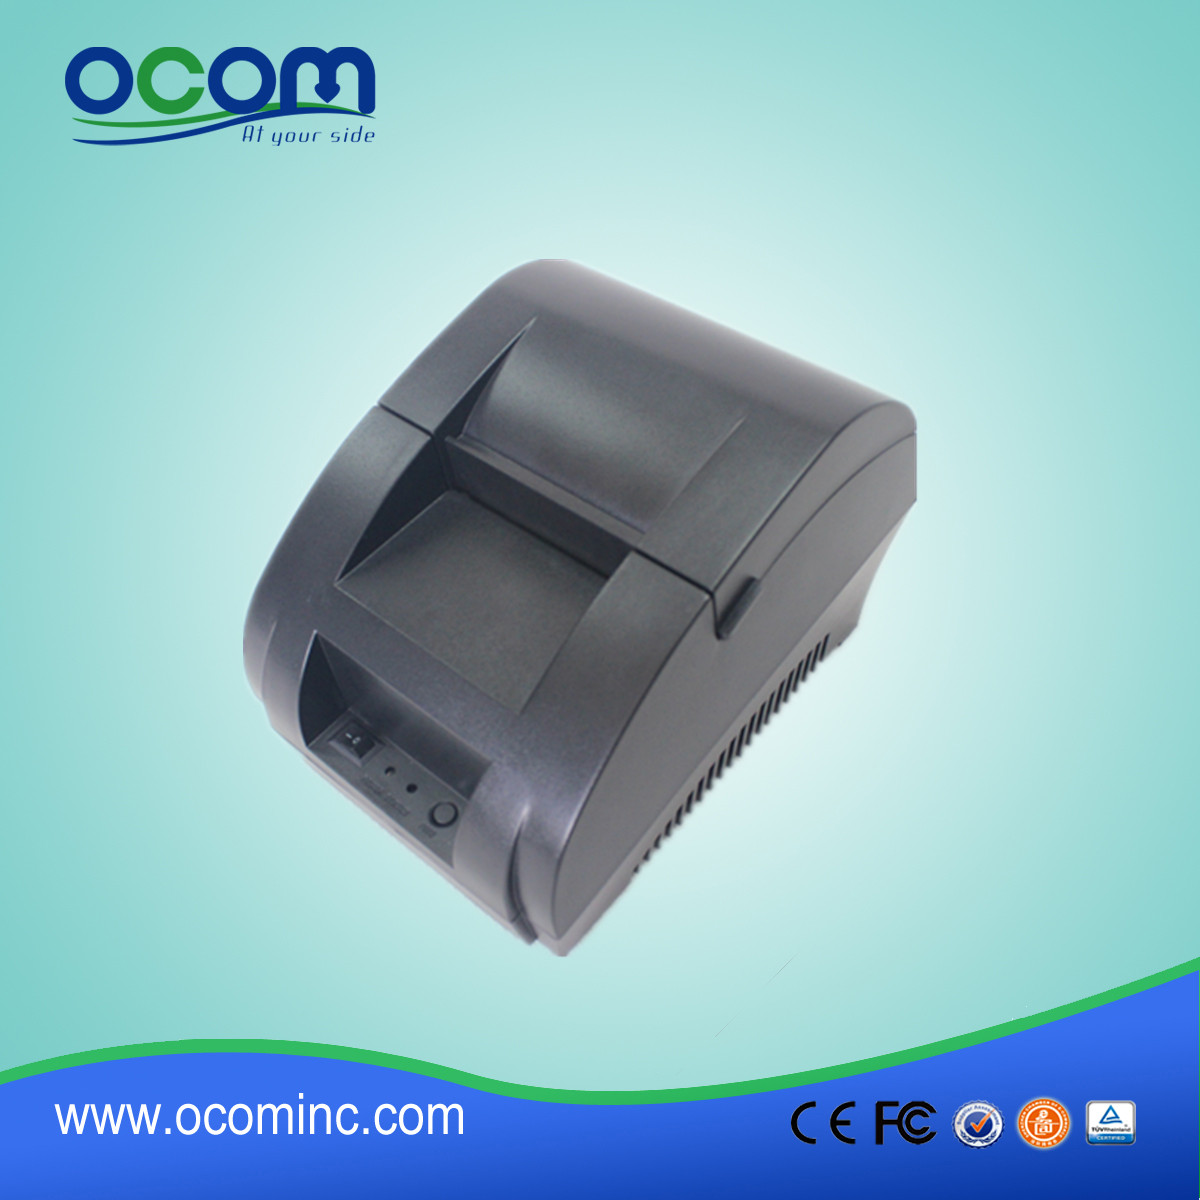 Imprimante de reçus thermiques de 58 mm avec adaptateur secteur intégré OCPP-58Z-U1 Impression de code 1D / 2D